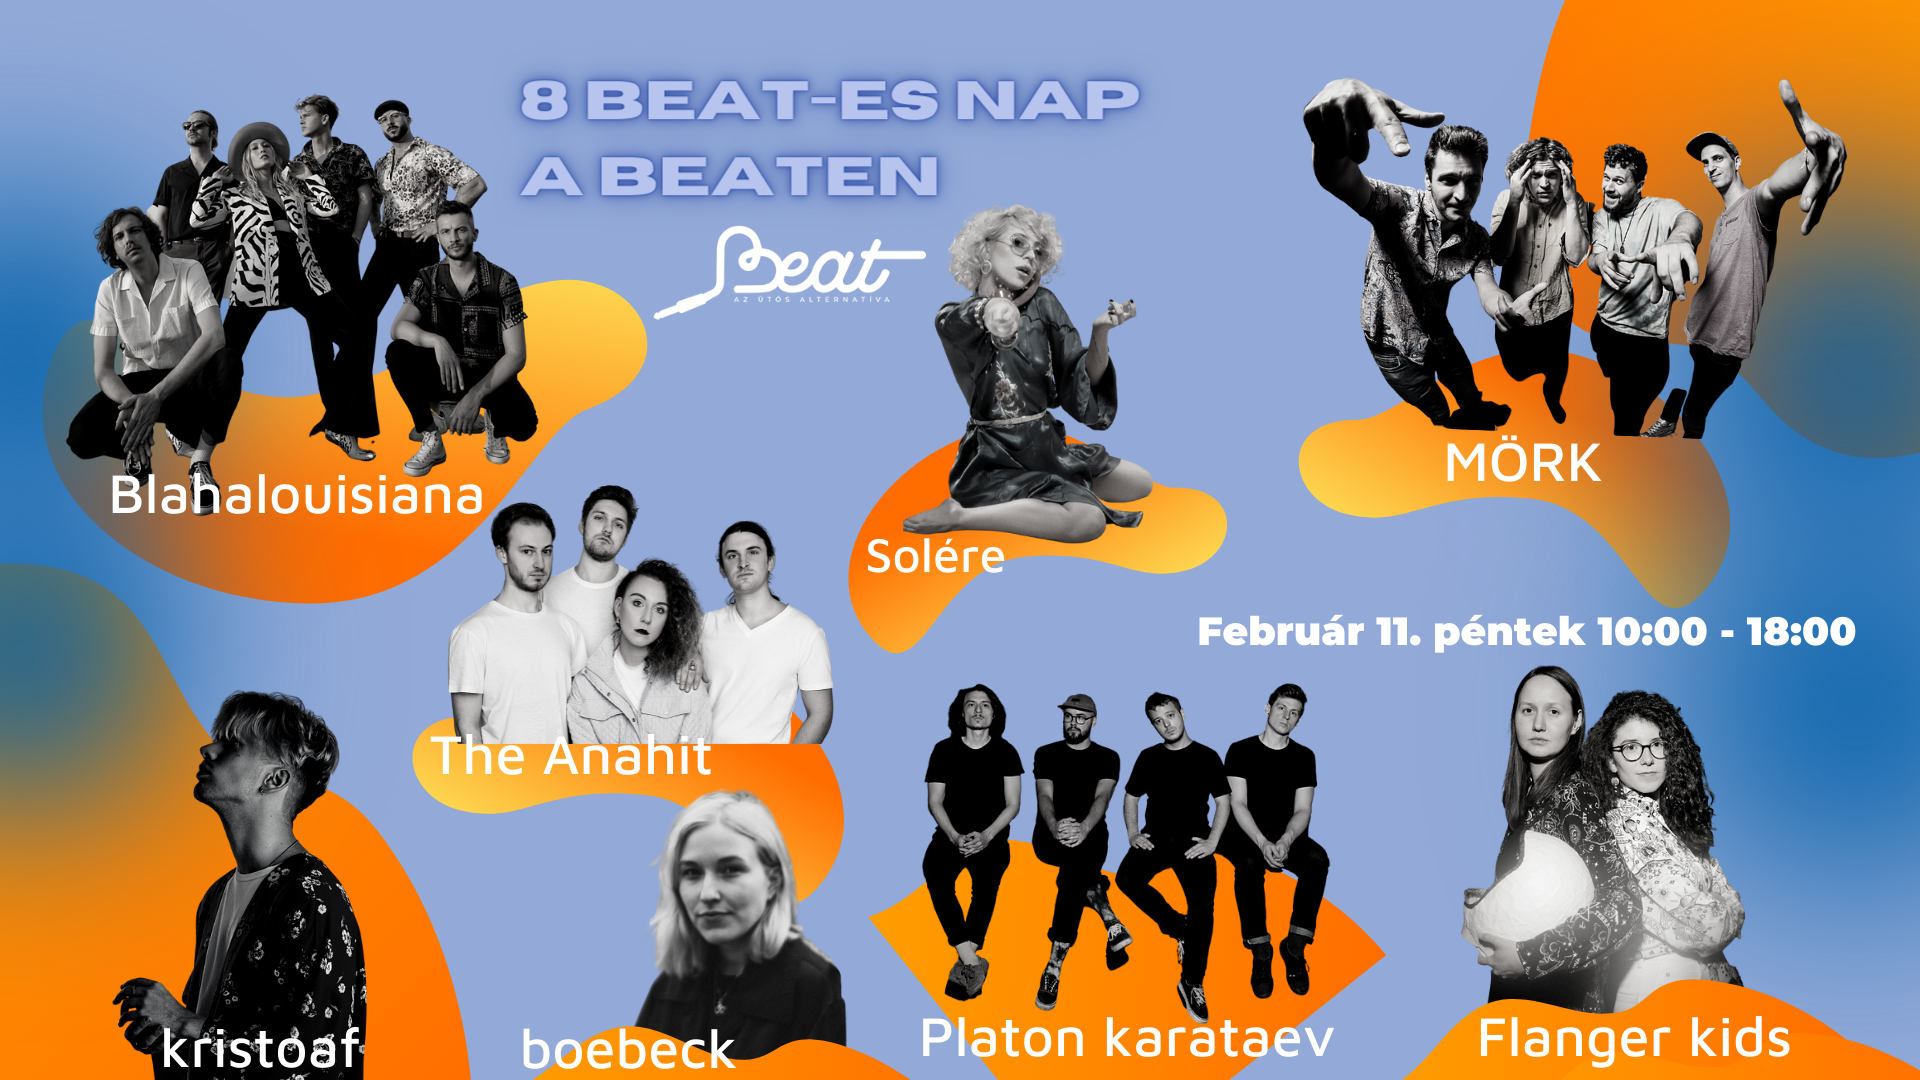 8beat-es_nap_foto_2.png